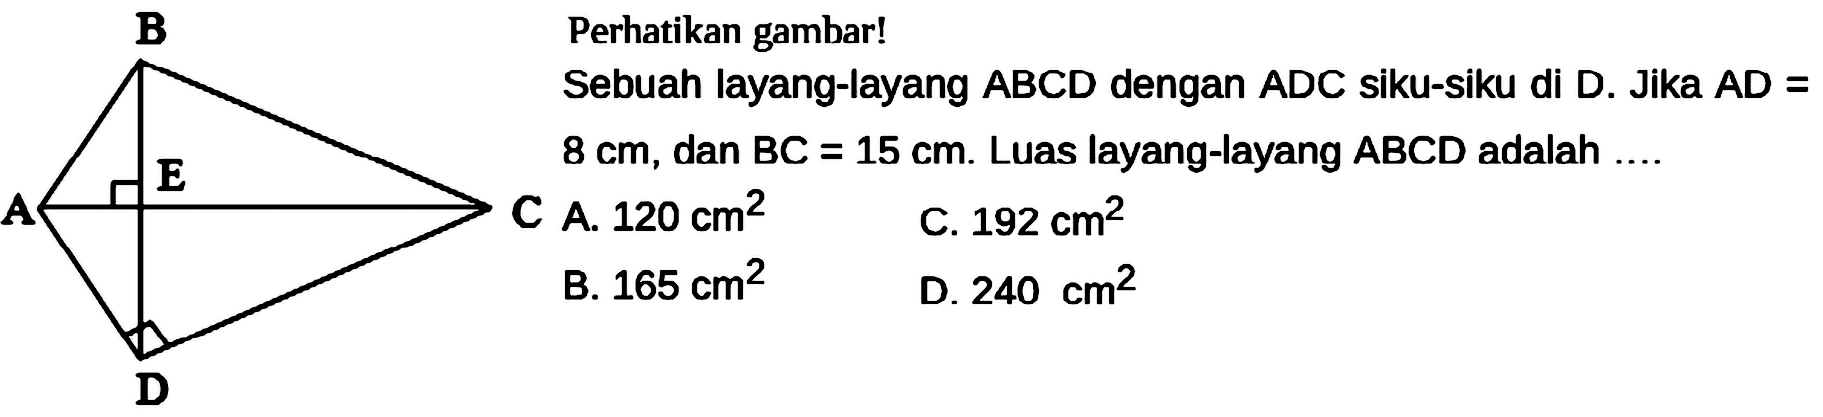 Perhatikan gambar! Sebuah layang-layang ABCD dengan ADC siku-siku di D. Jika AD= 8 cm, dan BC=15 cm. Luas layang-layang ABCD adalah .... B A E C D 
C A. 120 cm^2 C. 192 cm^2 B. 165 cm^2 D. 240 cm^2